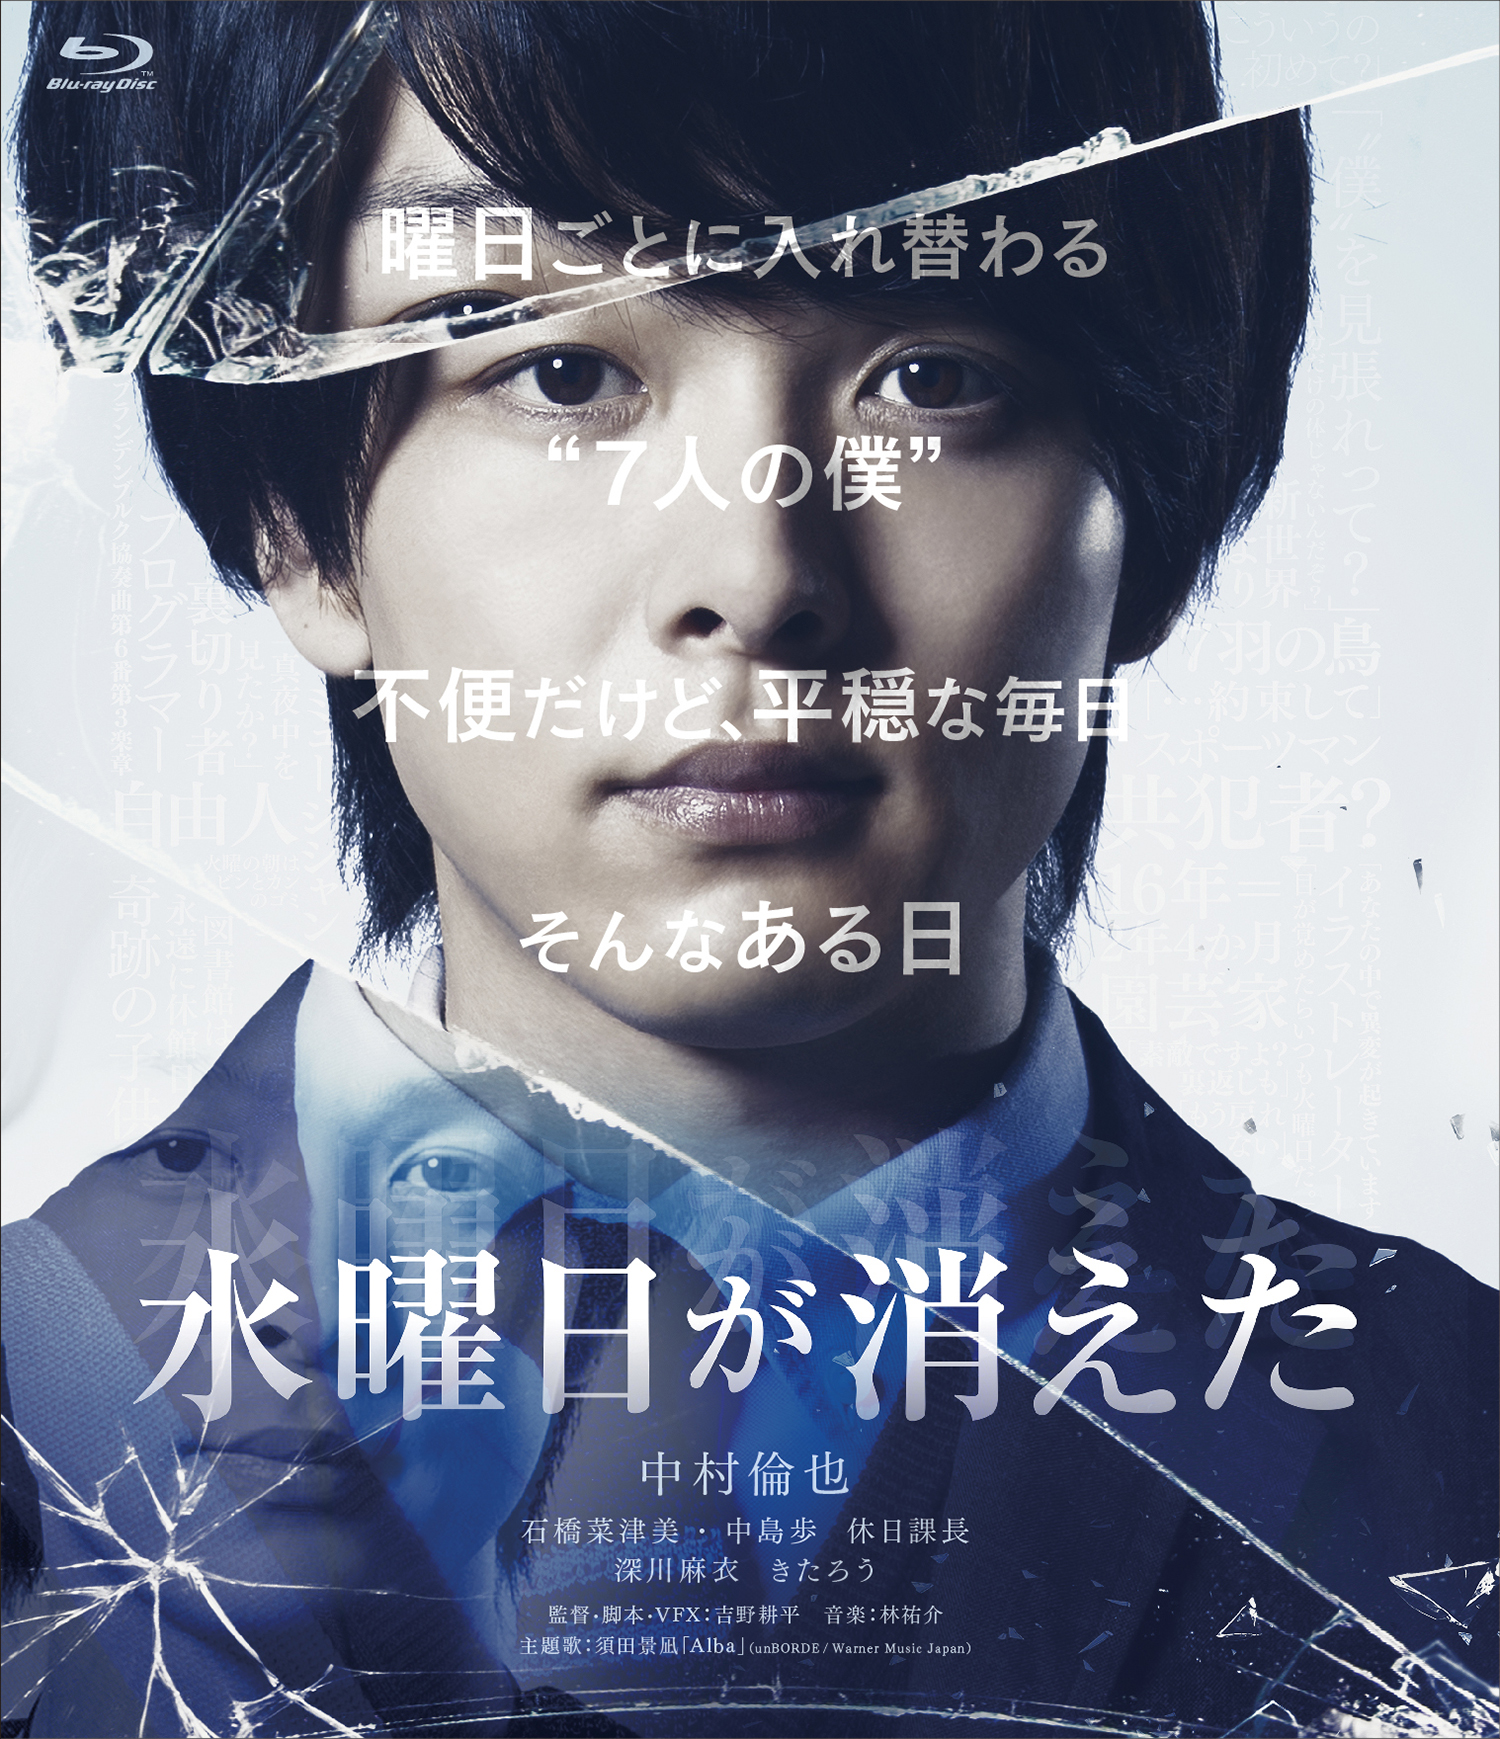 中村倫也主演作品「水曜日が消えた」のBlu-ray＆DVDが発売決定 